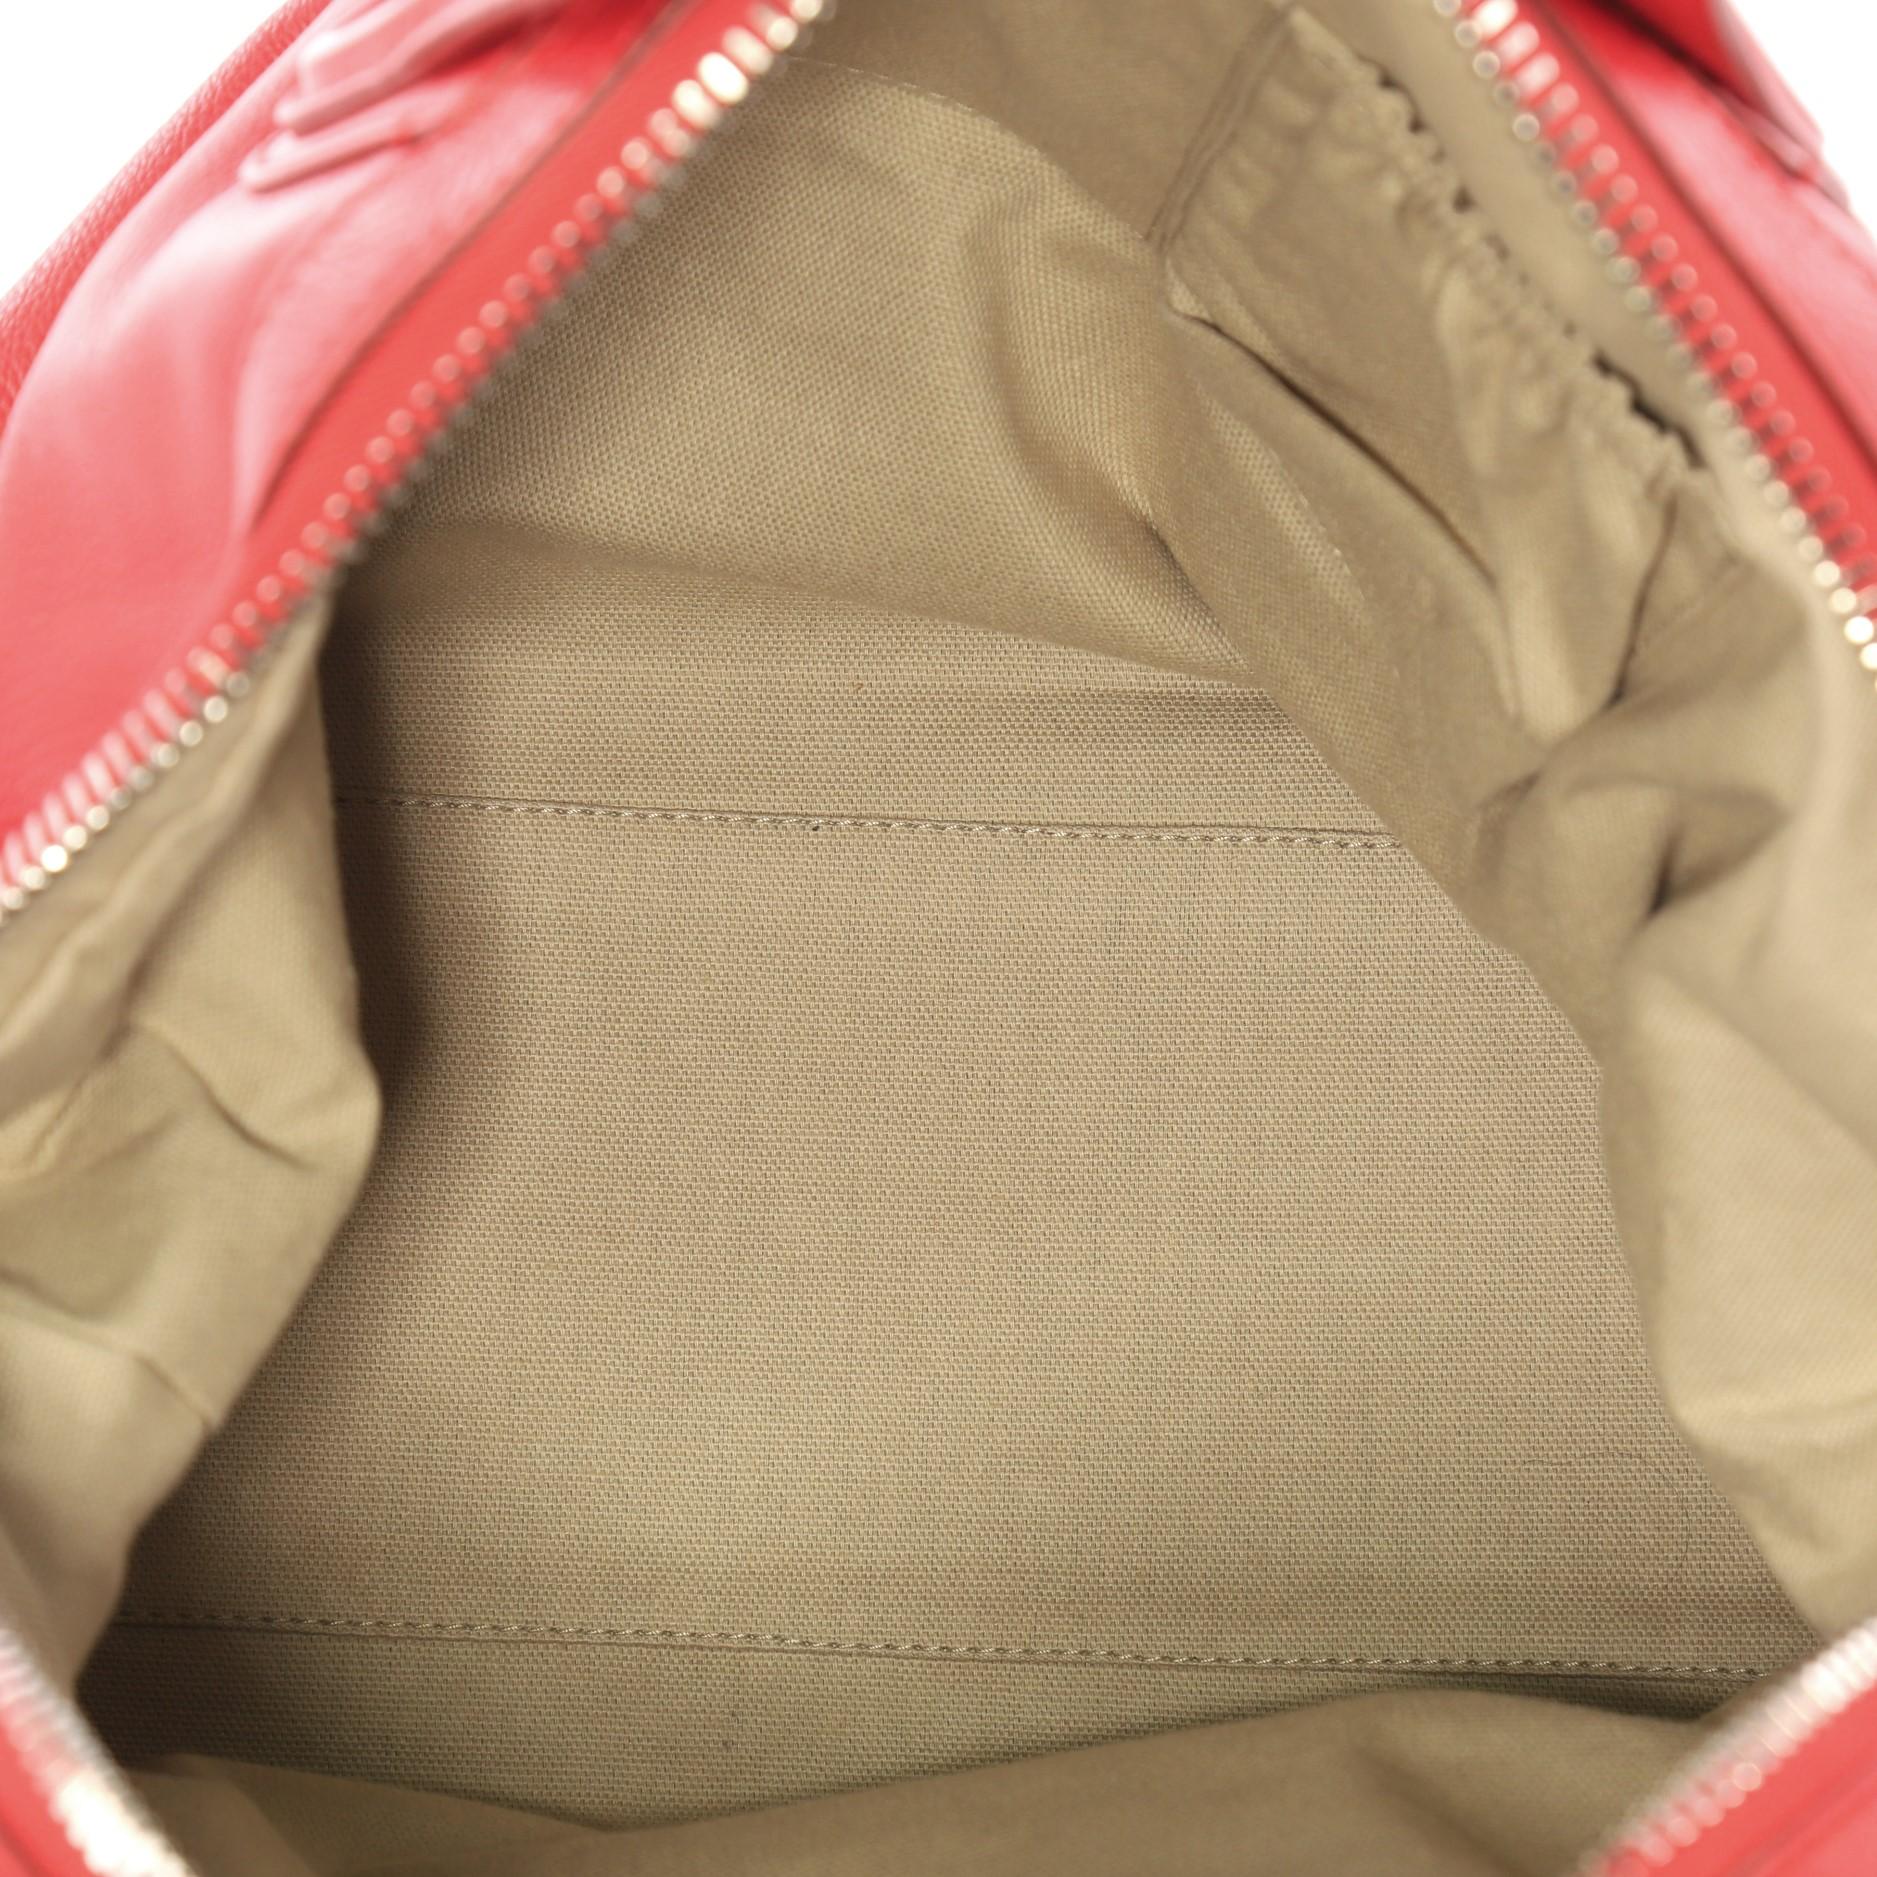 Givenchy Nightingale Satchel Waxed Leather Medium 1